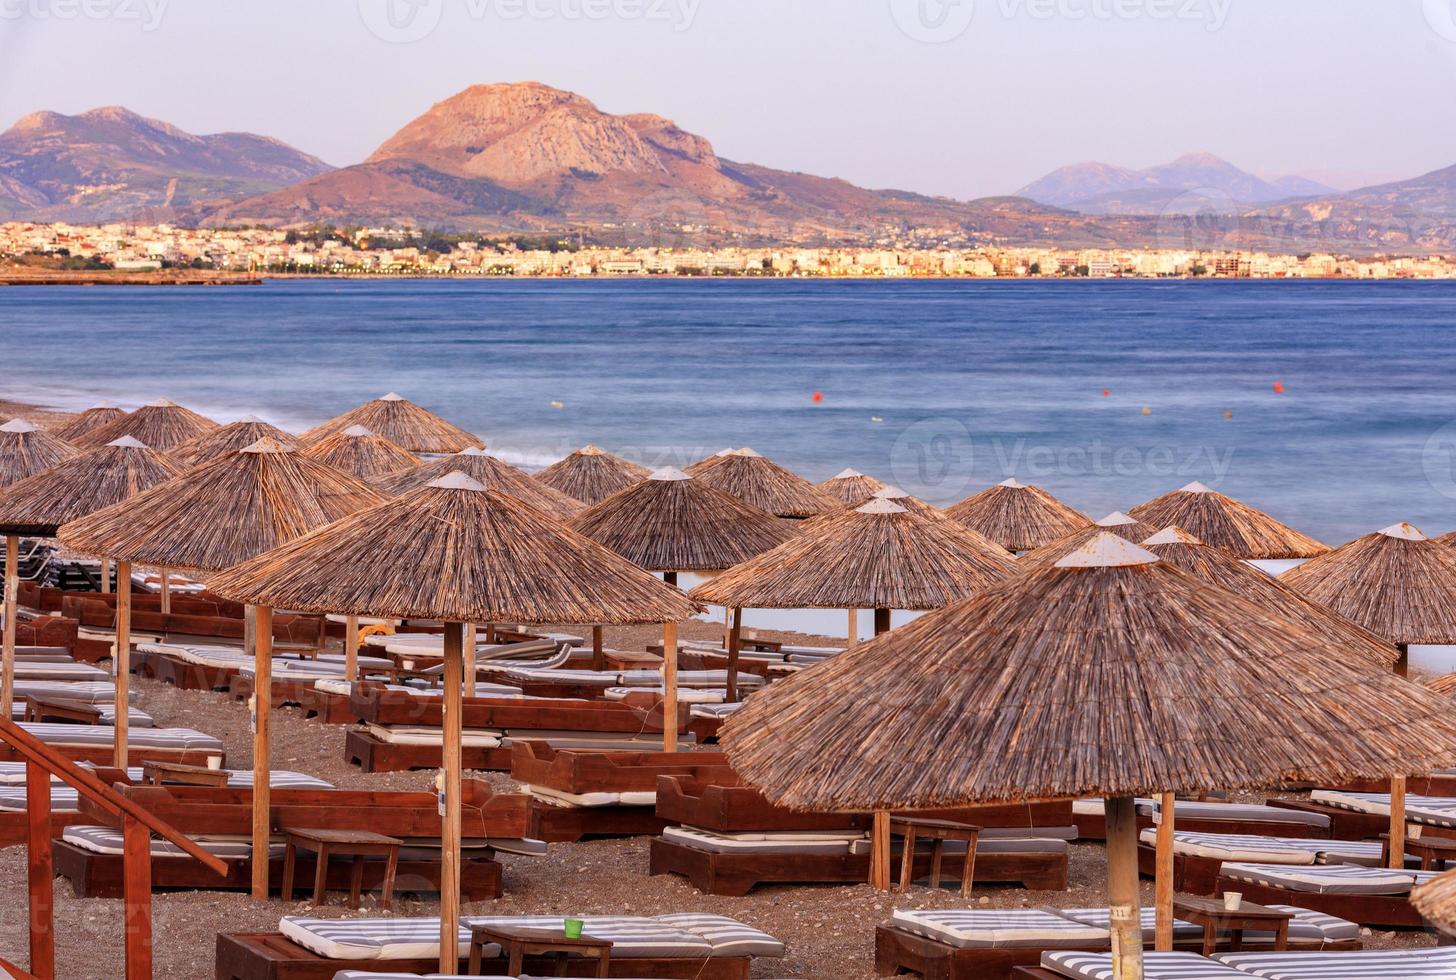 le cime di paglia degli ombrelloni e delle sedie a sdraio in legno con i materassini sul lungomare deserto sotto i raggi del sole al tramonto della sera. foto